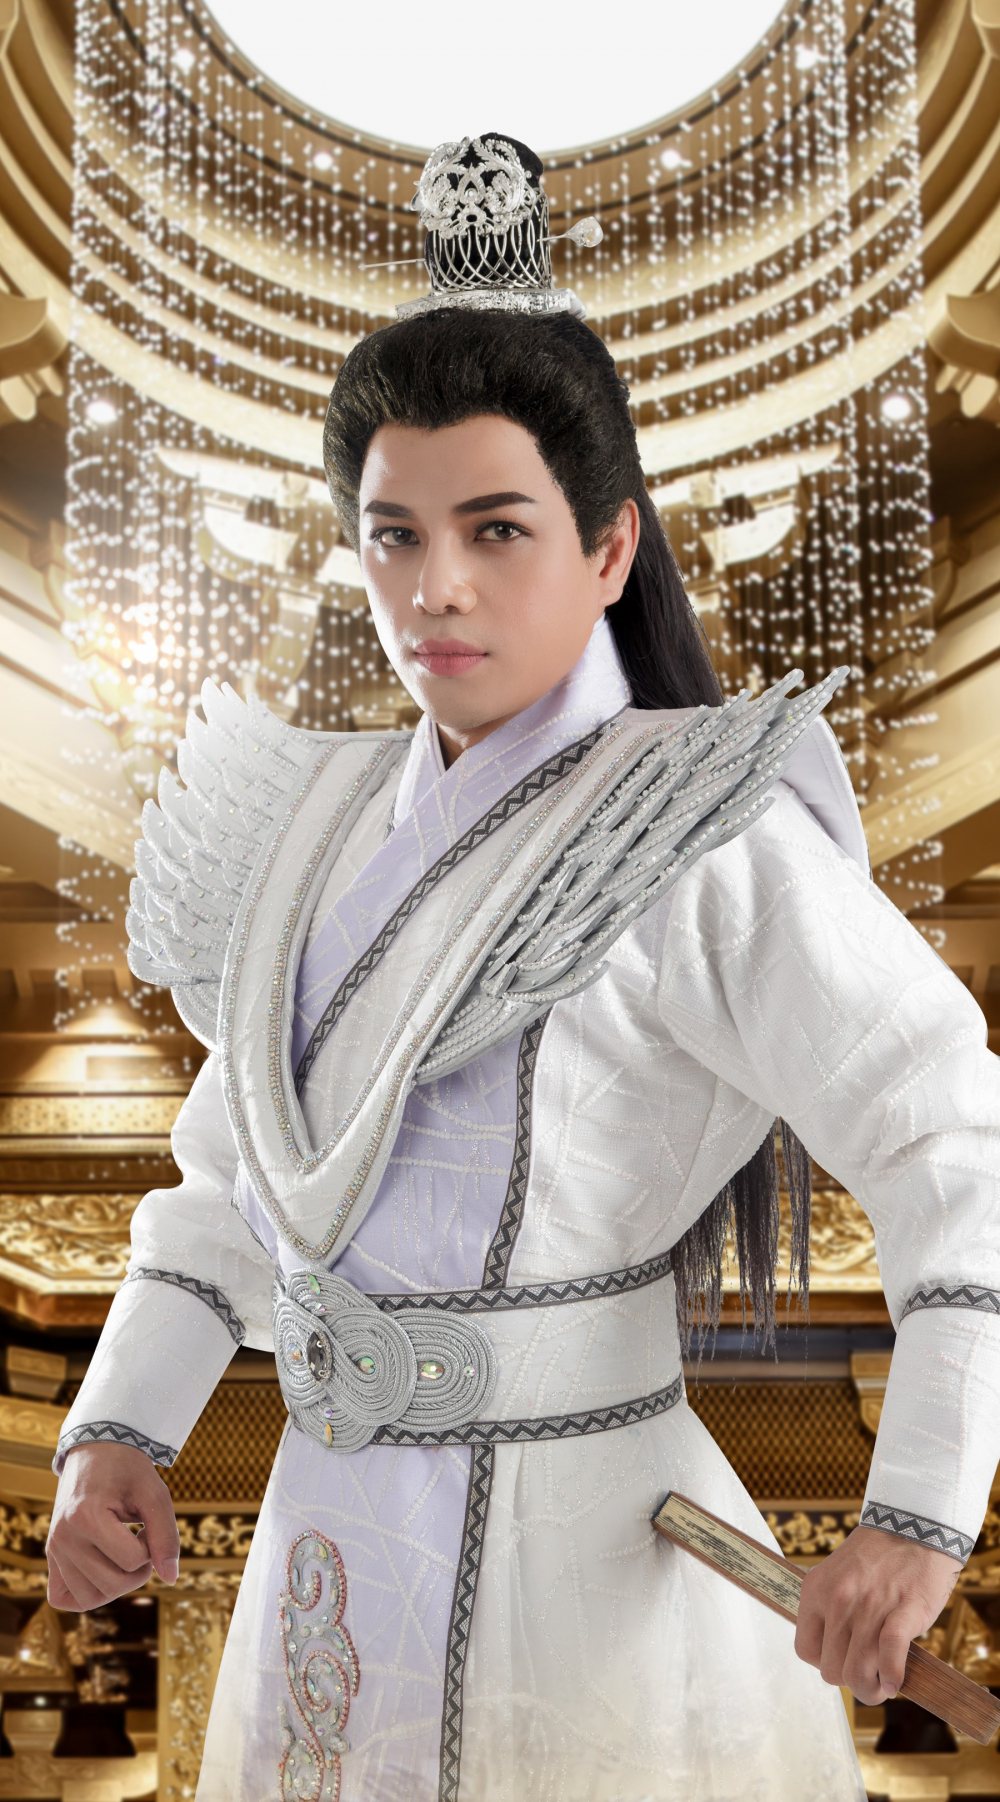 Với Lan Lăng Vương nhập trận khúc, cũng là lần đầu tiên Hoàng Hải đảm nhận vai chính trong một vở diễn.